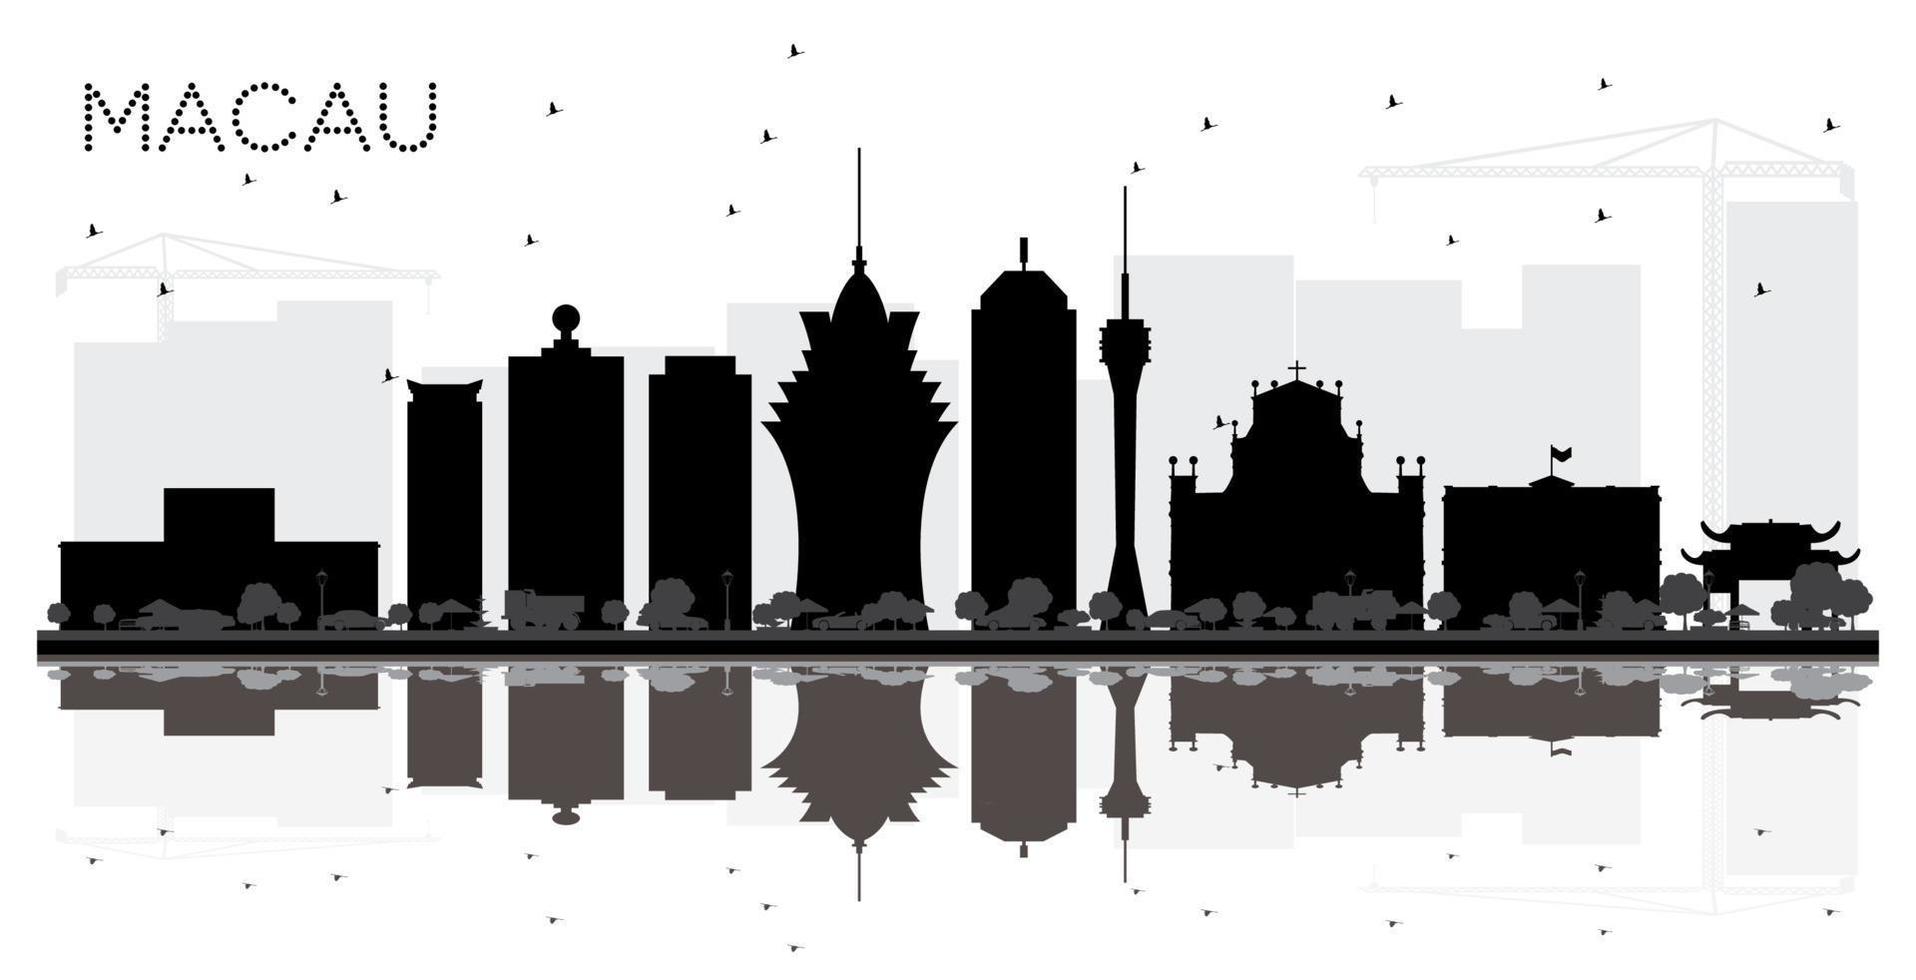 silueta en blanco y negro del horizonte de la ciudad de macao china con reflejos. vector